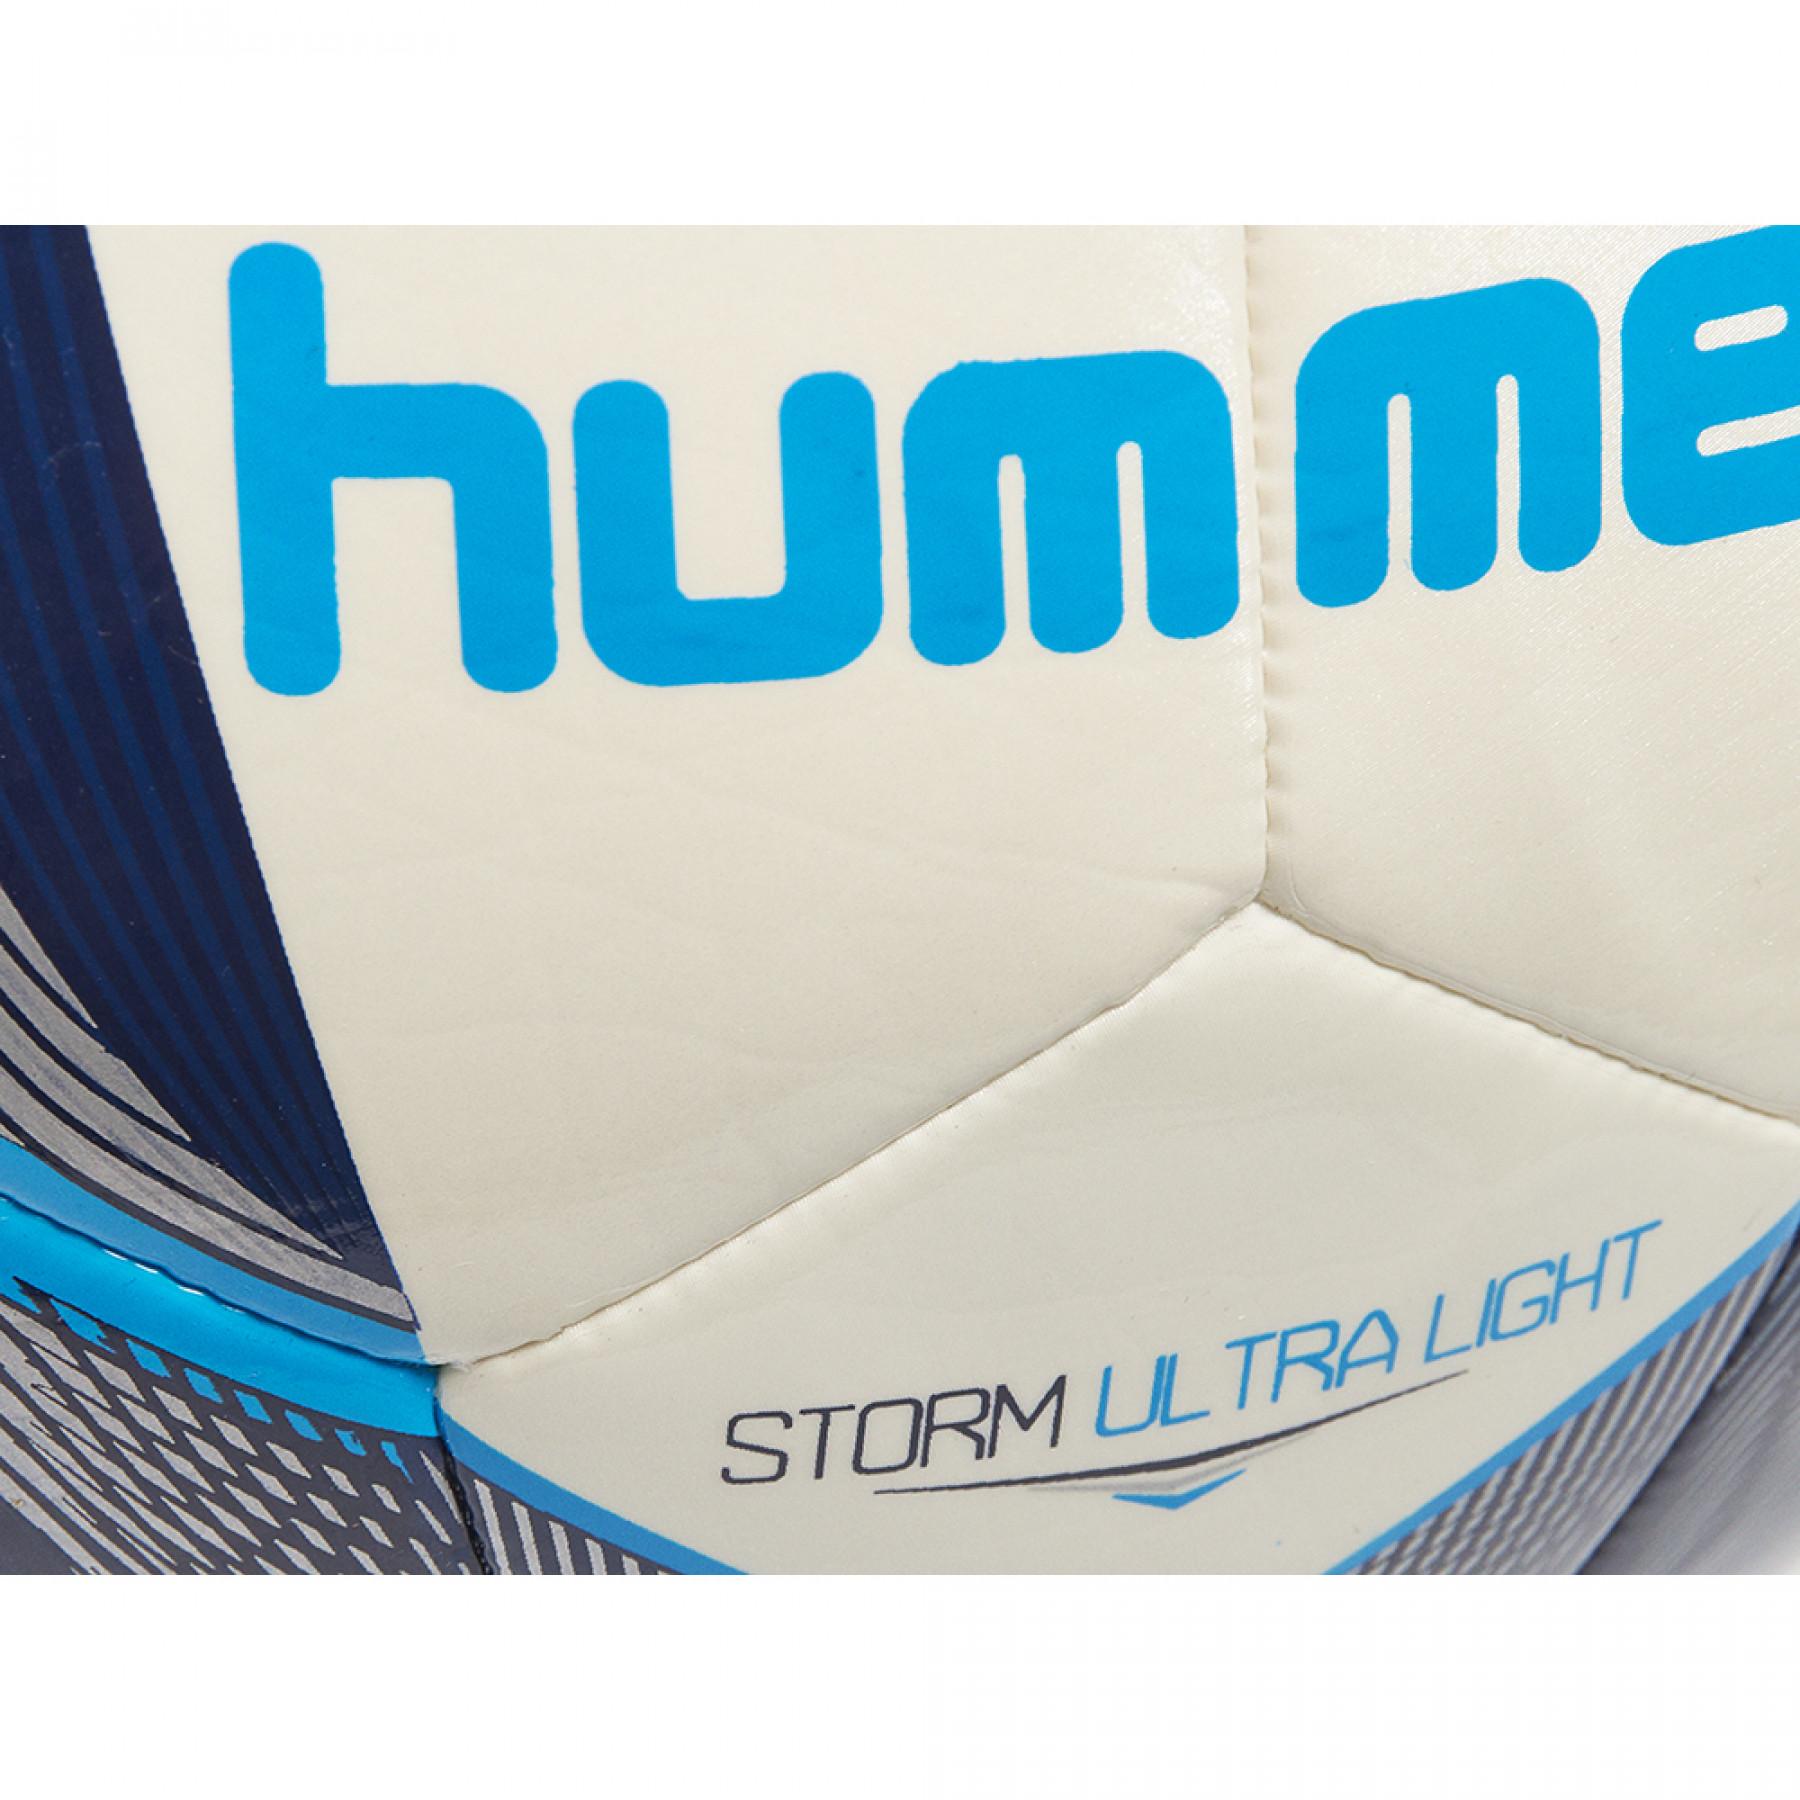 Piłka nożna Hummel storm ultra light fb